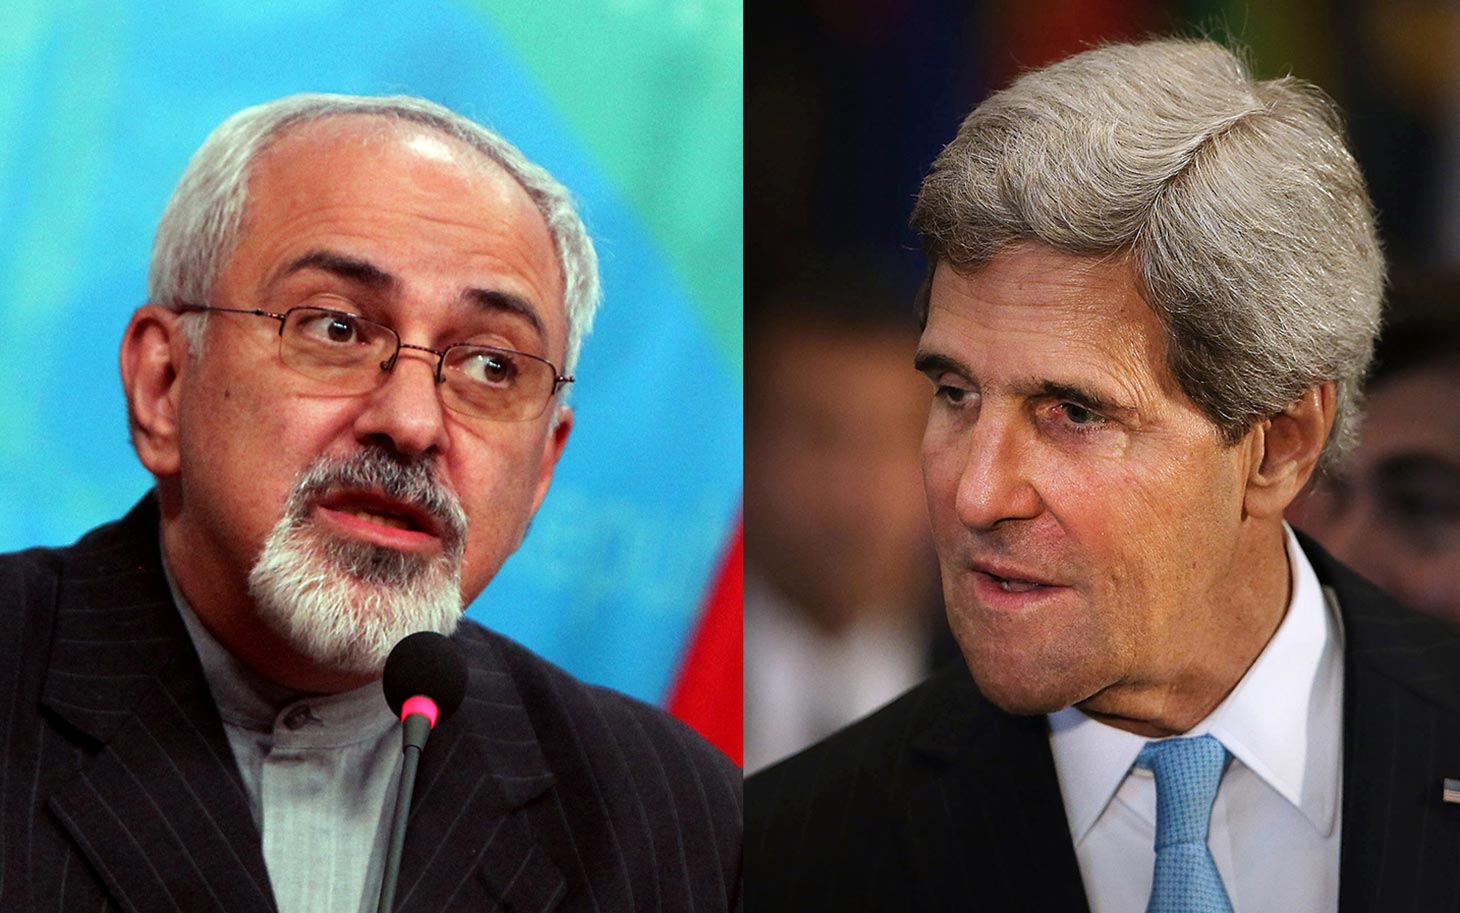 Iran’s Zarif, U.S.’s Kerry focus on nuclear talks